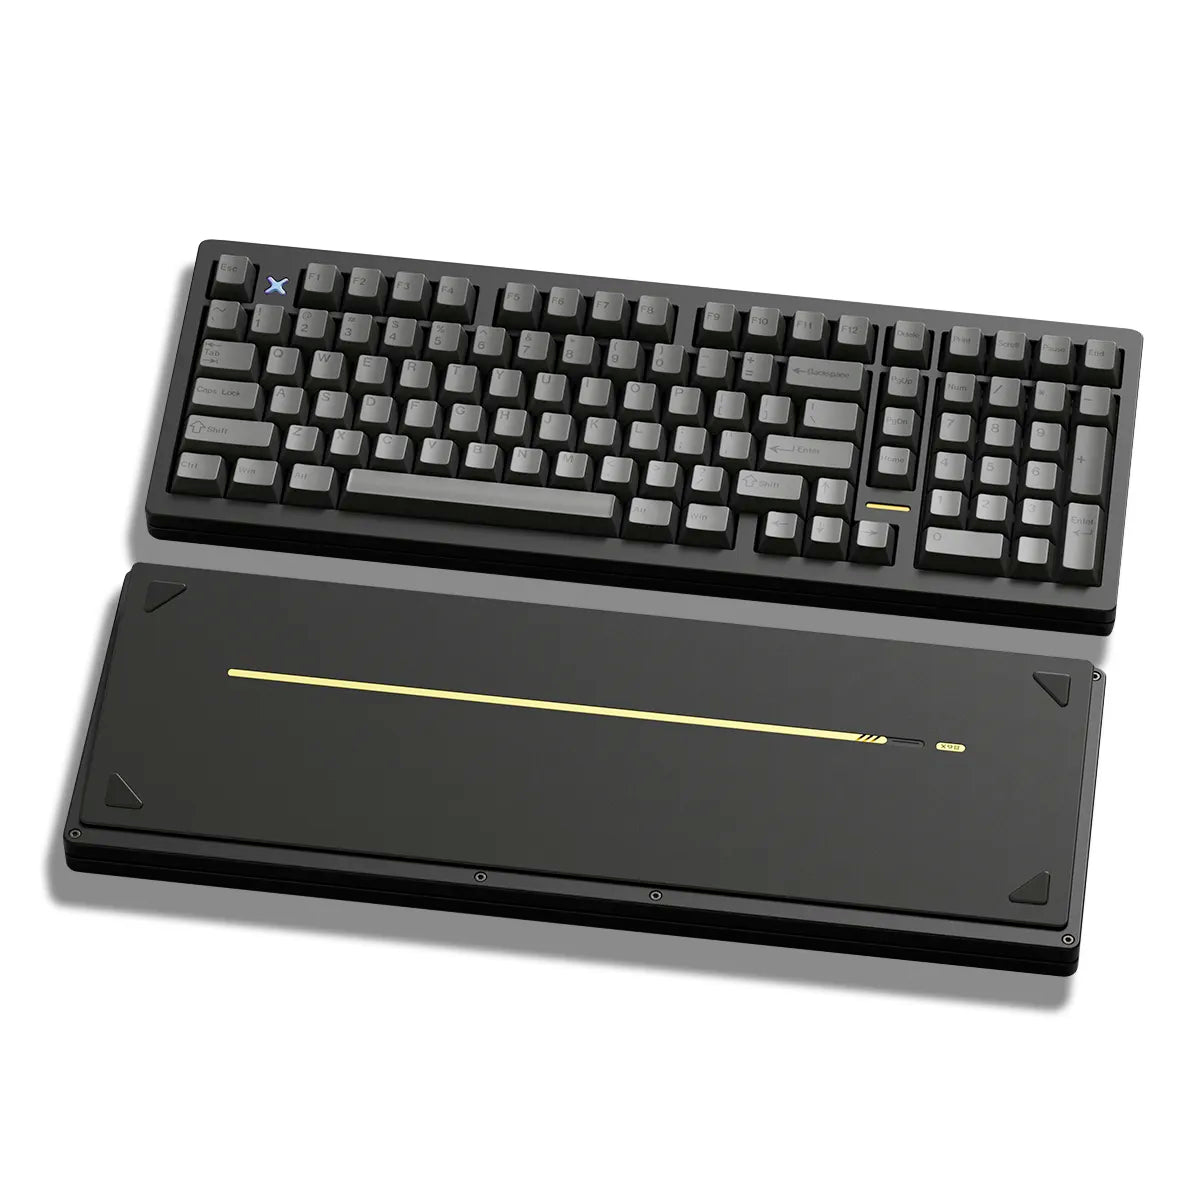 [GB] Wind Studio WIND X98 R2 1800 Keyboard Kit - Divinikey